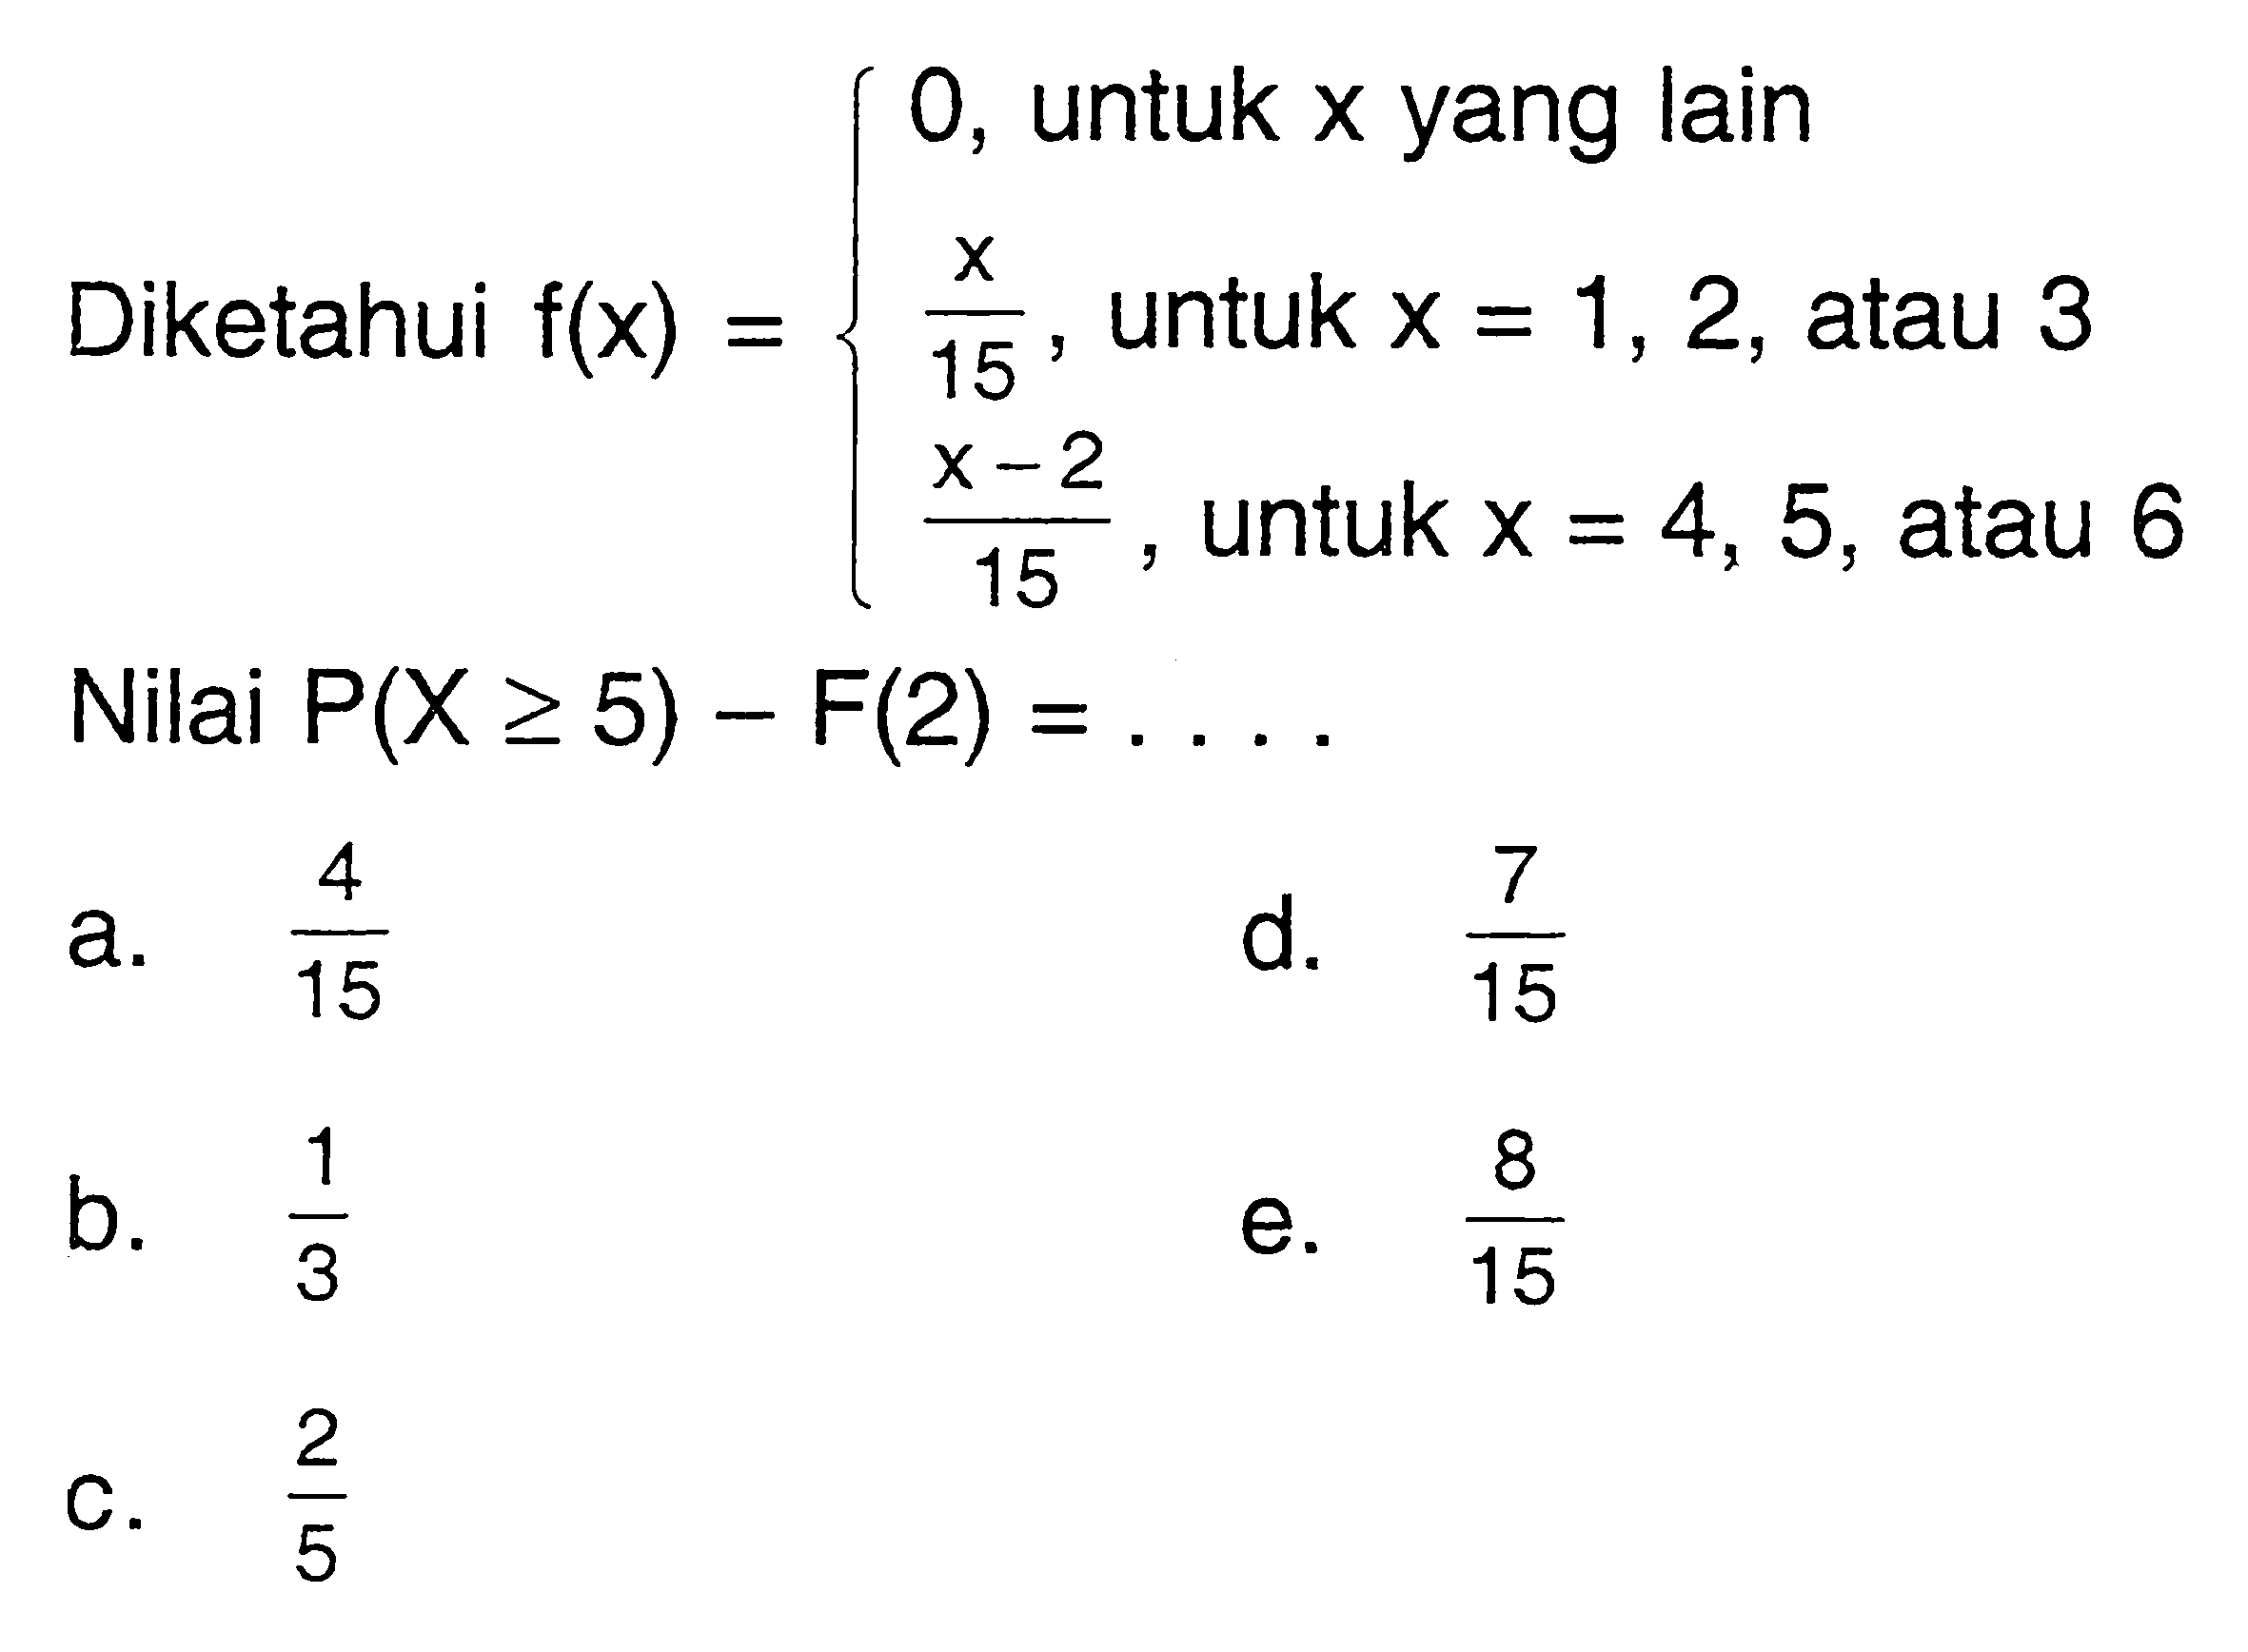 Diketahui f(x)={0,  untuk x yang lain x/15, untuk x=1,2, atau 3 (x-2)/15, untuk x=4,5, atau 6. Nilai P(X>=5)-F(2)=... 